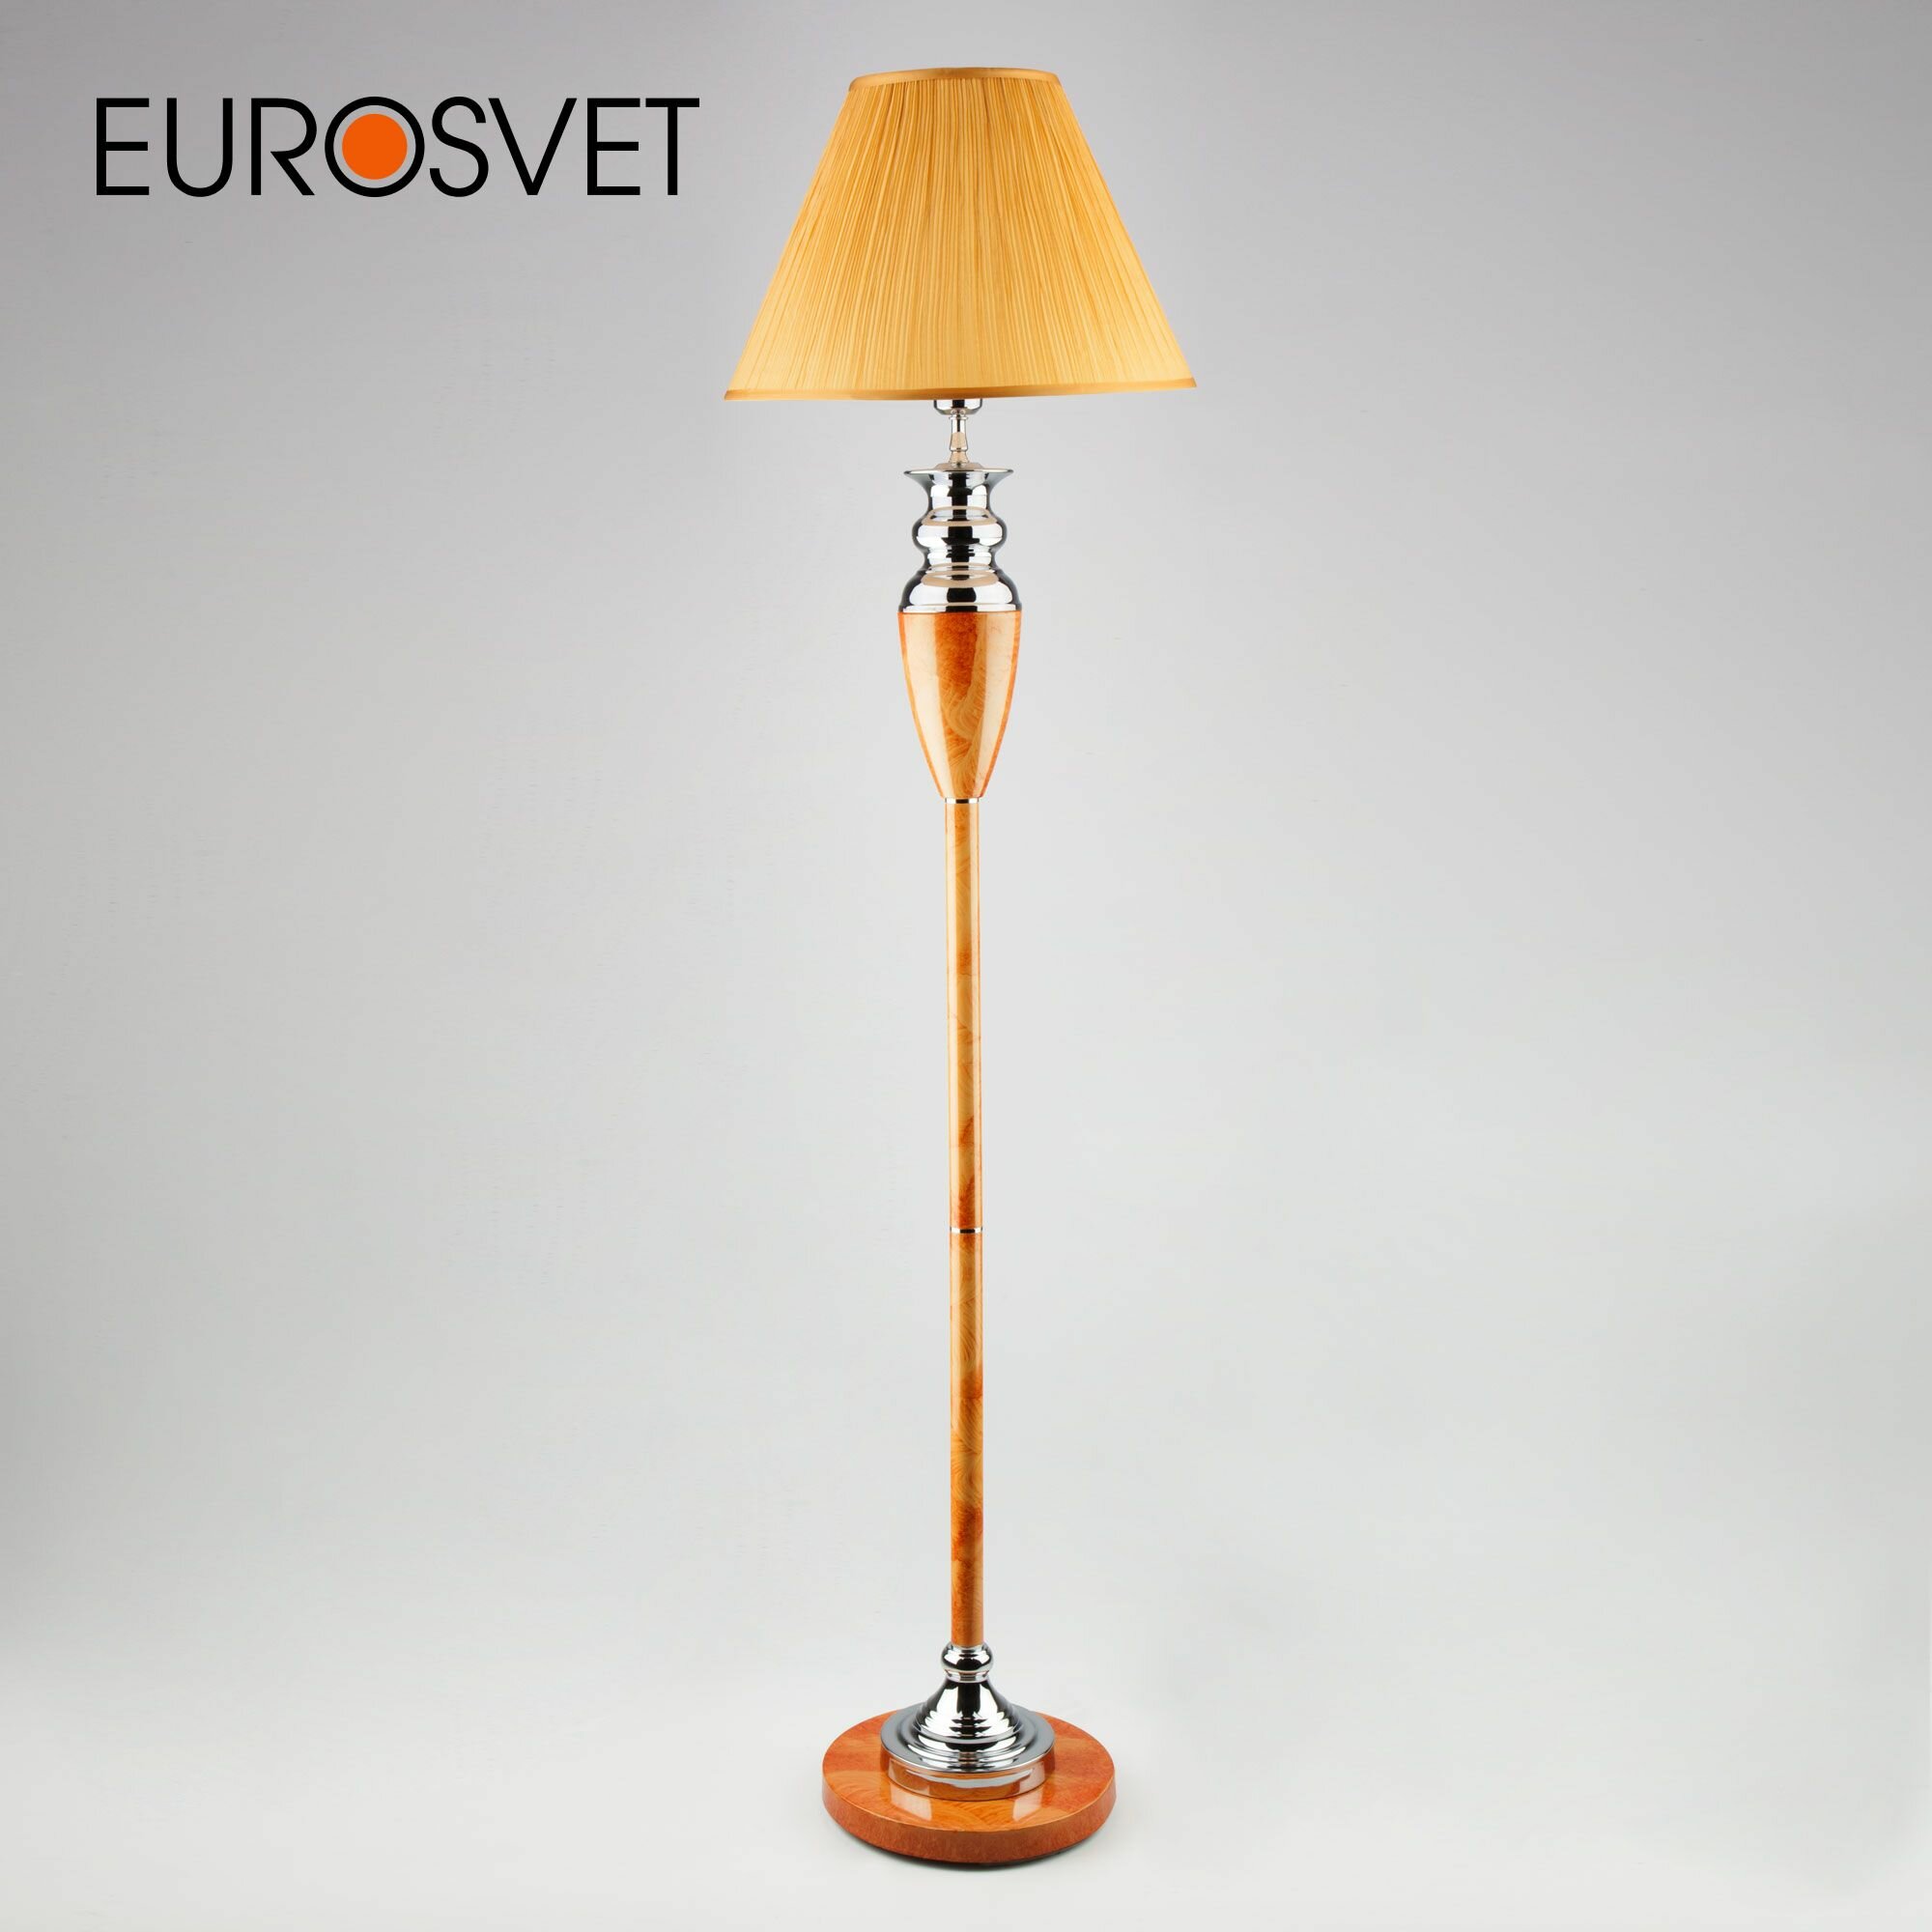 Торшер / Напольный светильник классический с абажуром Eurosvet 009/1T RDM (янтарь)